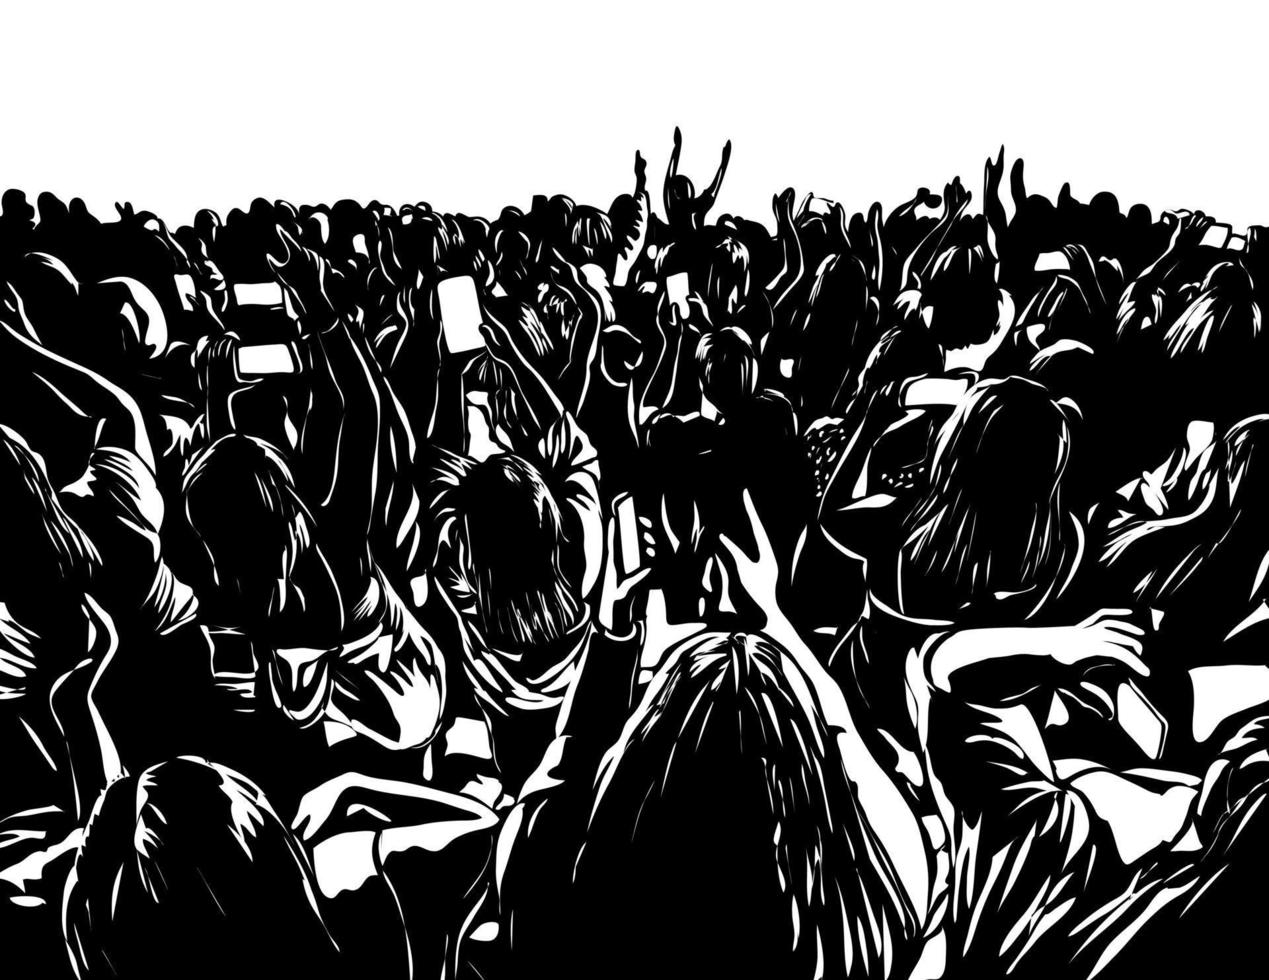 foule de gens regardant un concert tenant des téléphones portables gravure sur bois noir et blanc vecteur